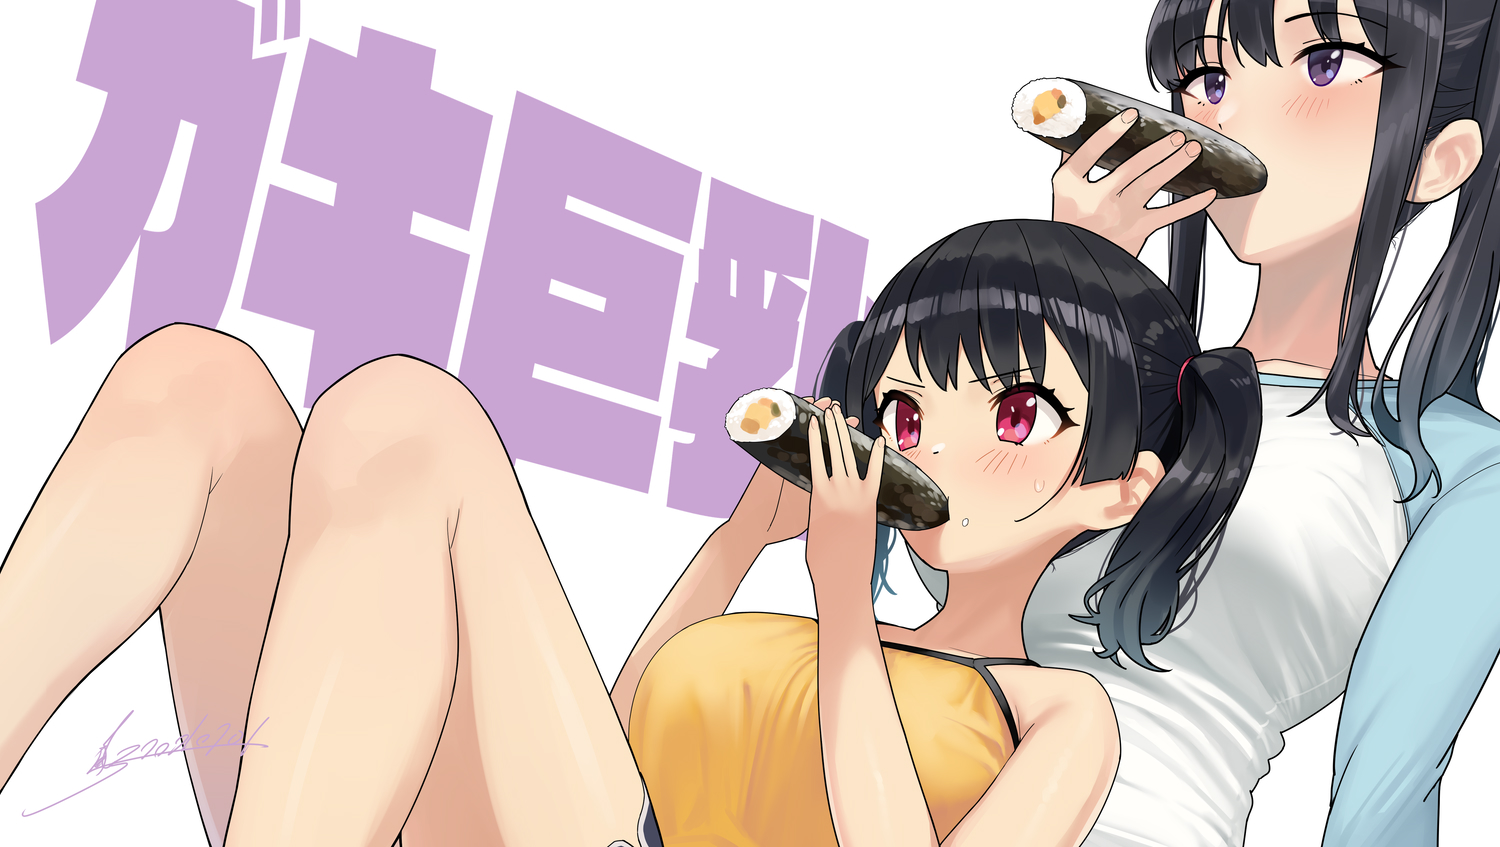 Anime Anime Girls Digital Art Artwork 2D Portrait Kaedeko Food Sushi Anime Girls Eating Blush Black  1500x847